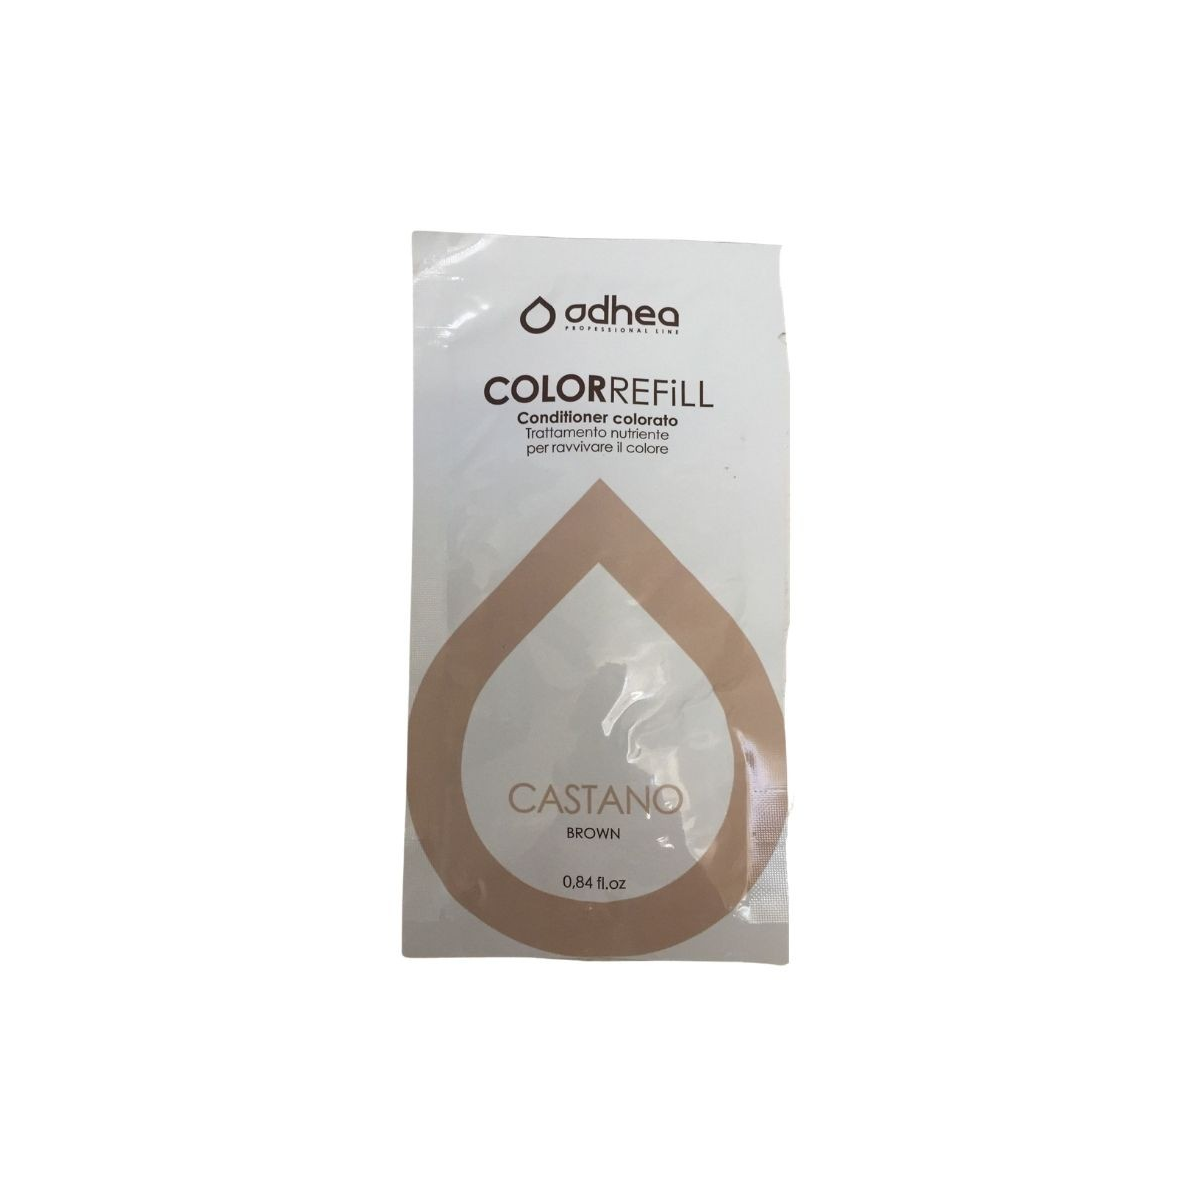 ODHEA - COLOR REFILL CASTANO (25ml) Conditioner colorato